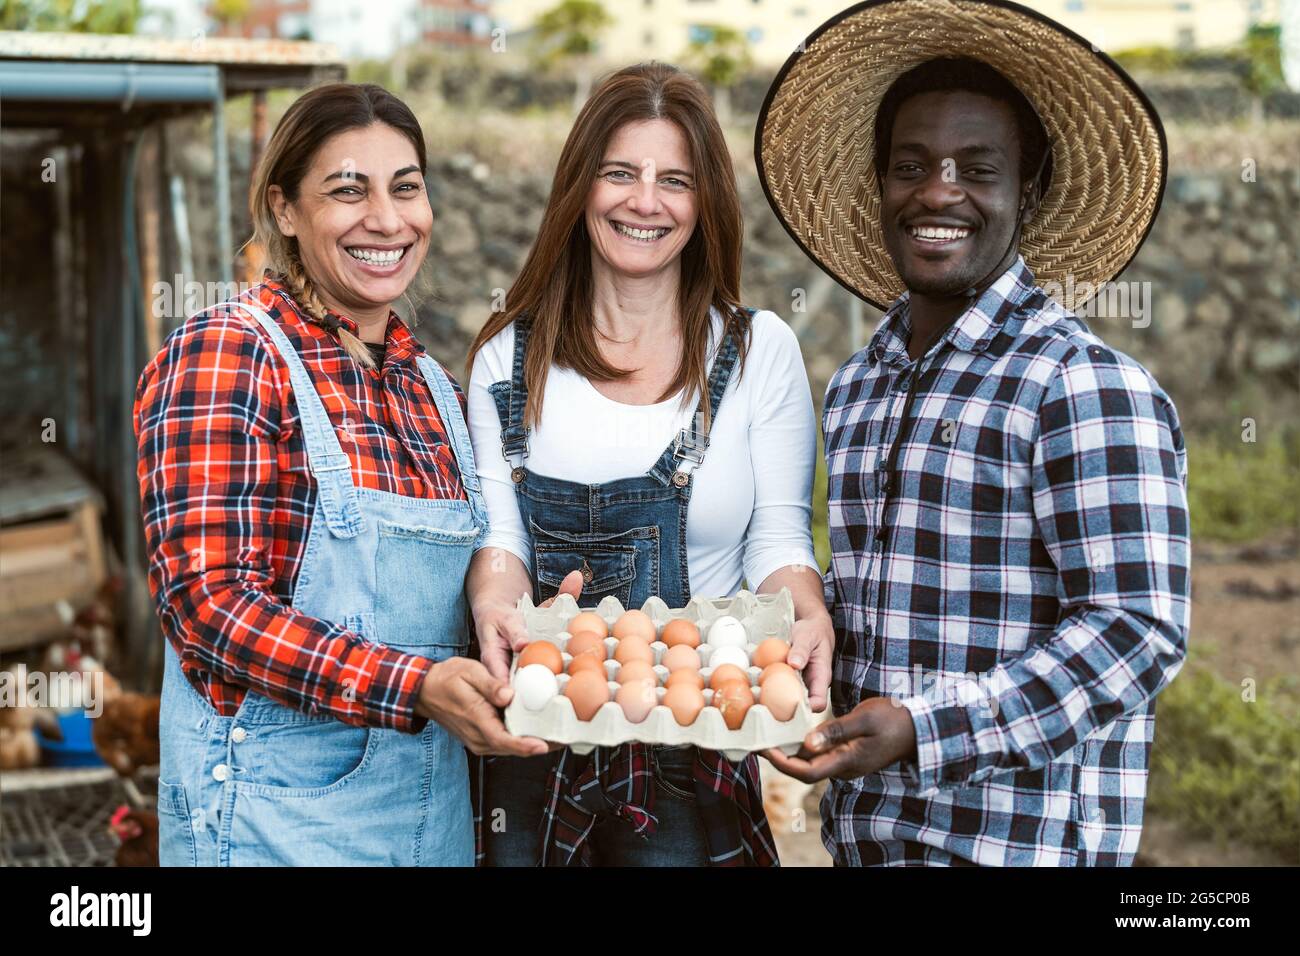 Glückliche Bauern sammeln frische Eier im Hühnerhausgarten - Lifestyle-Konzept für Farmmenschen Stockfoto